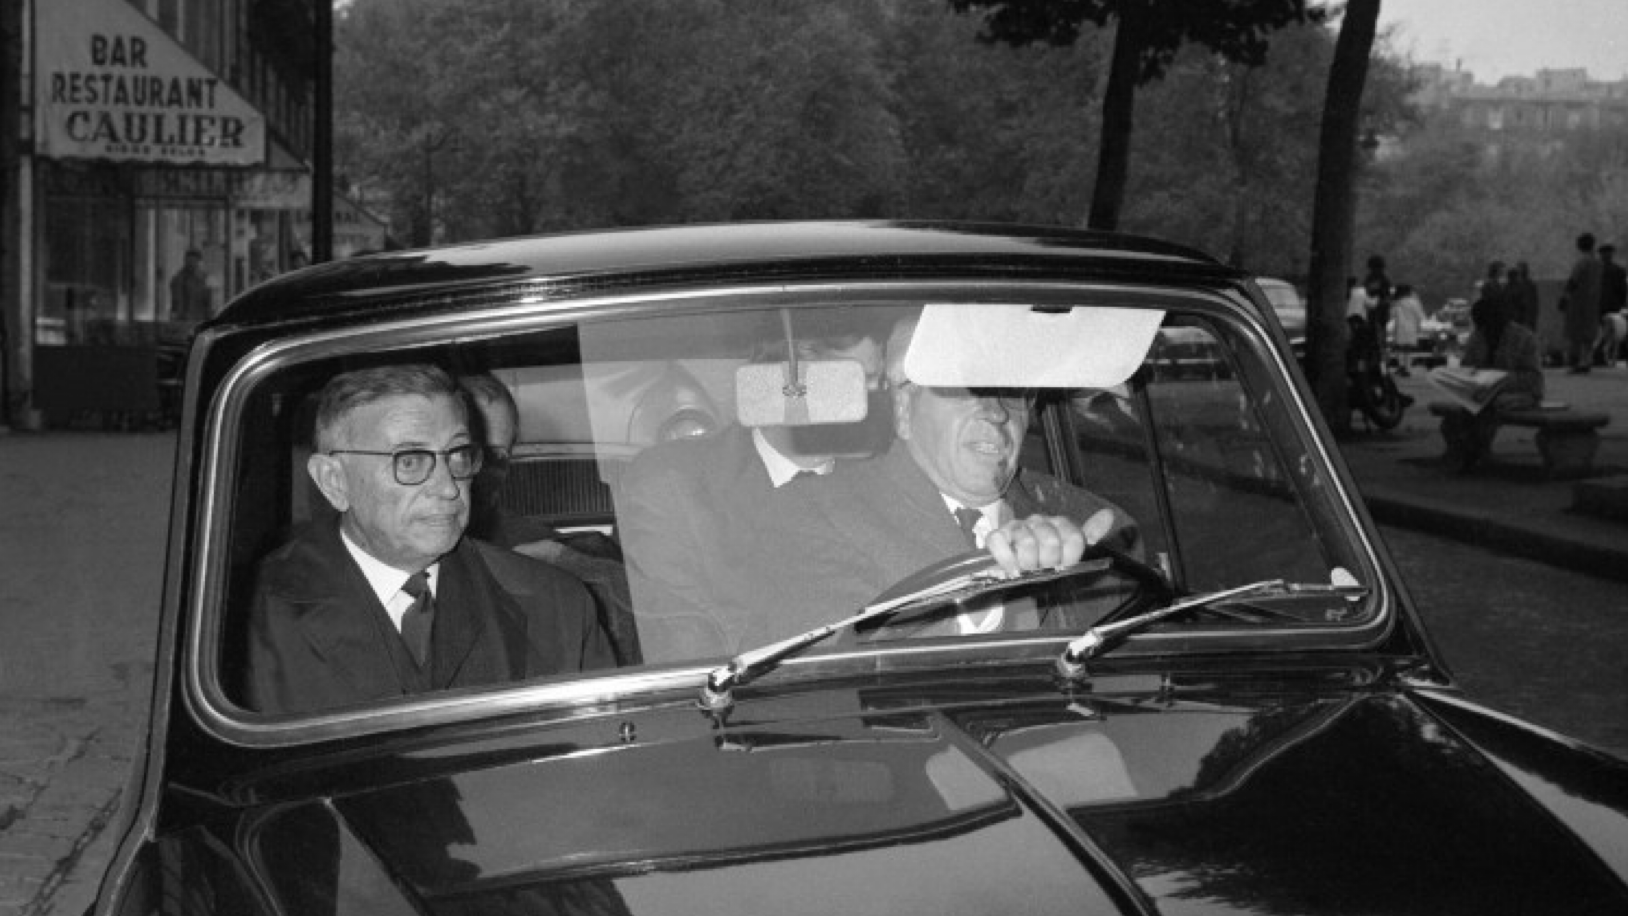 جان بول سارتر يغادر مطعم L'Oriental بالسيارة يوم إعلان فوزه بجائزة نوبل للآداب التي رفضها في 22 تشرين الأول (أكتوبر) 1964